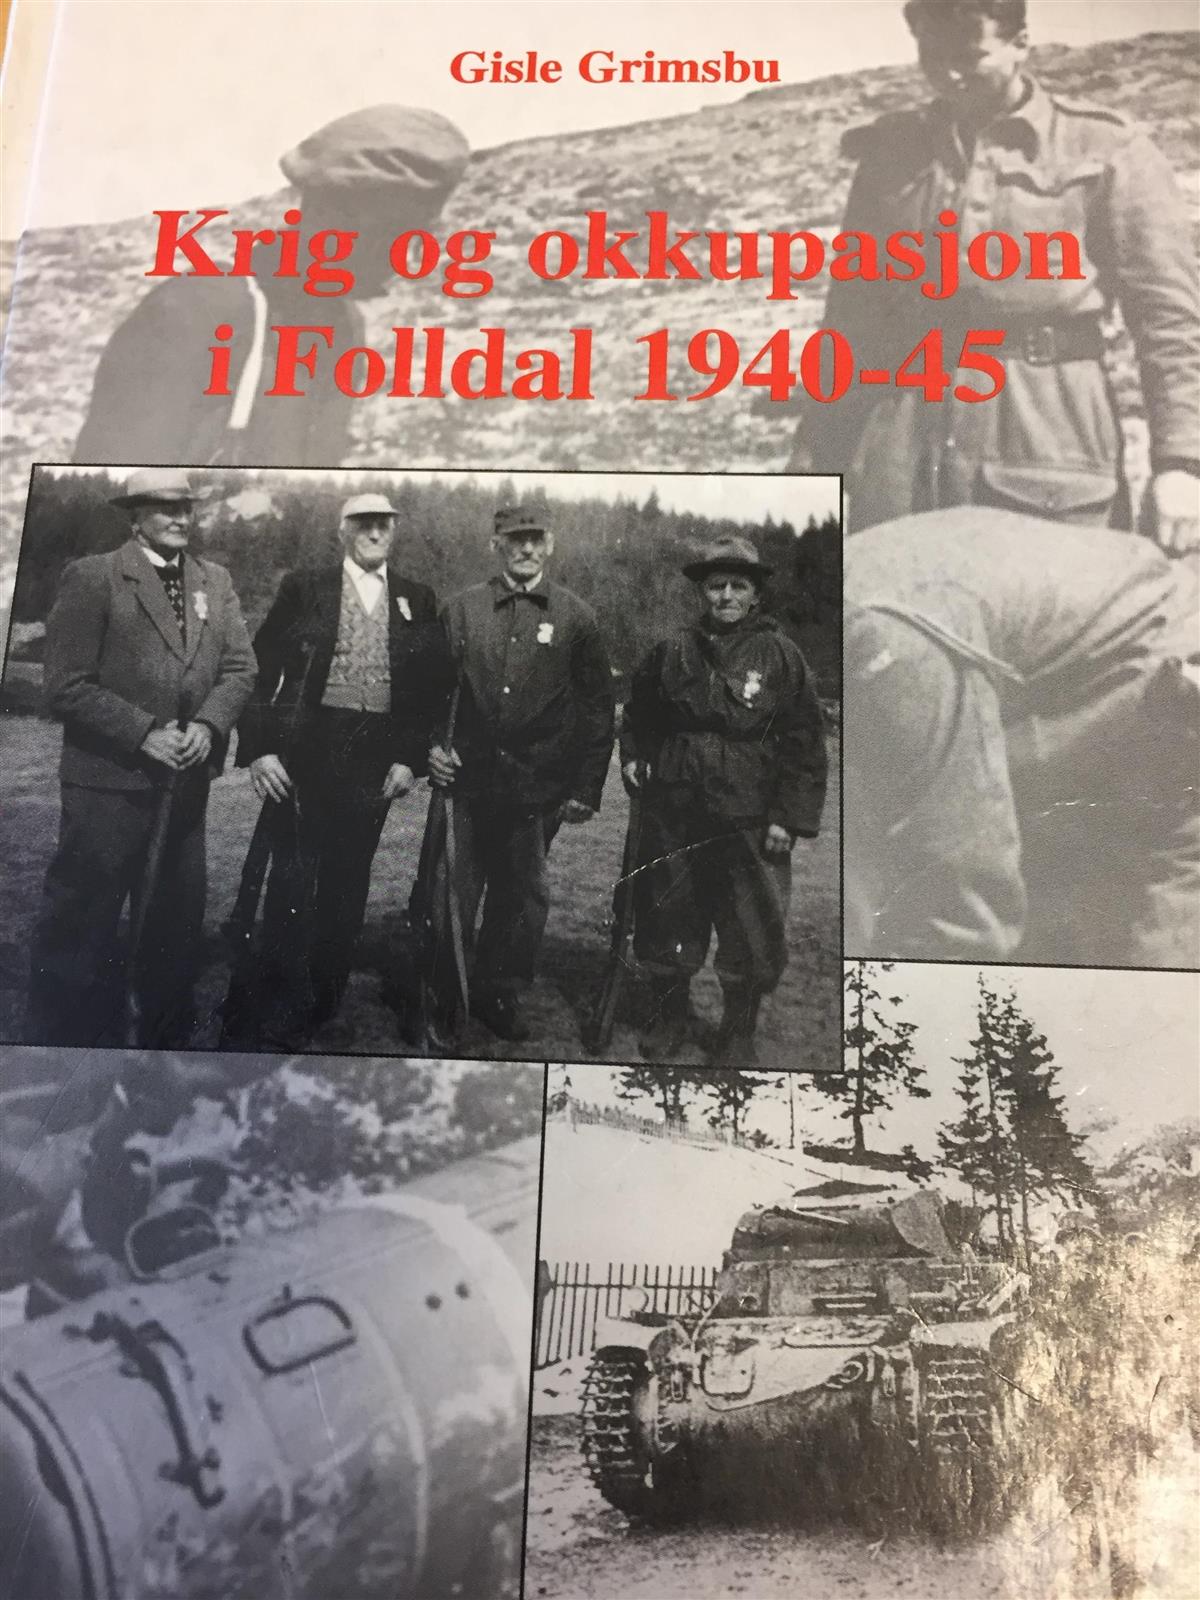 Krig og okkupasjon i Folldal 1940-45